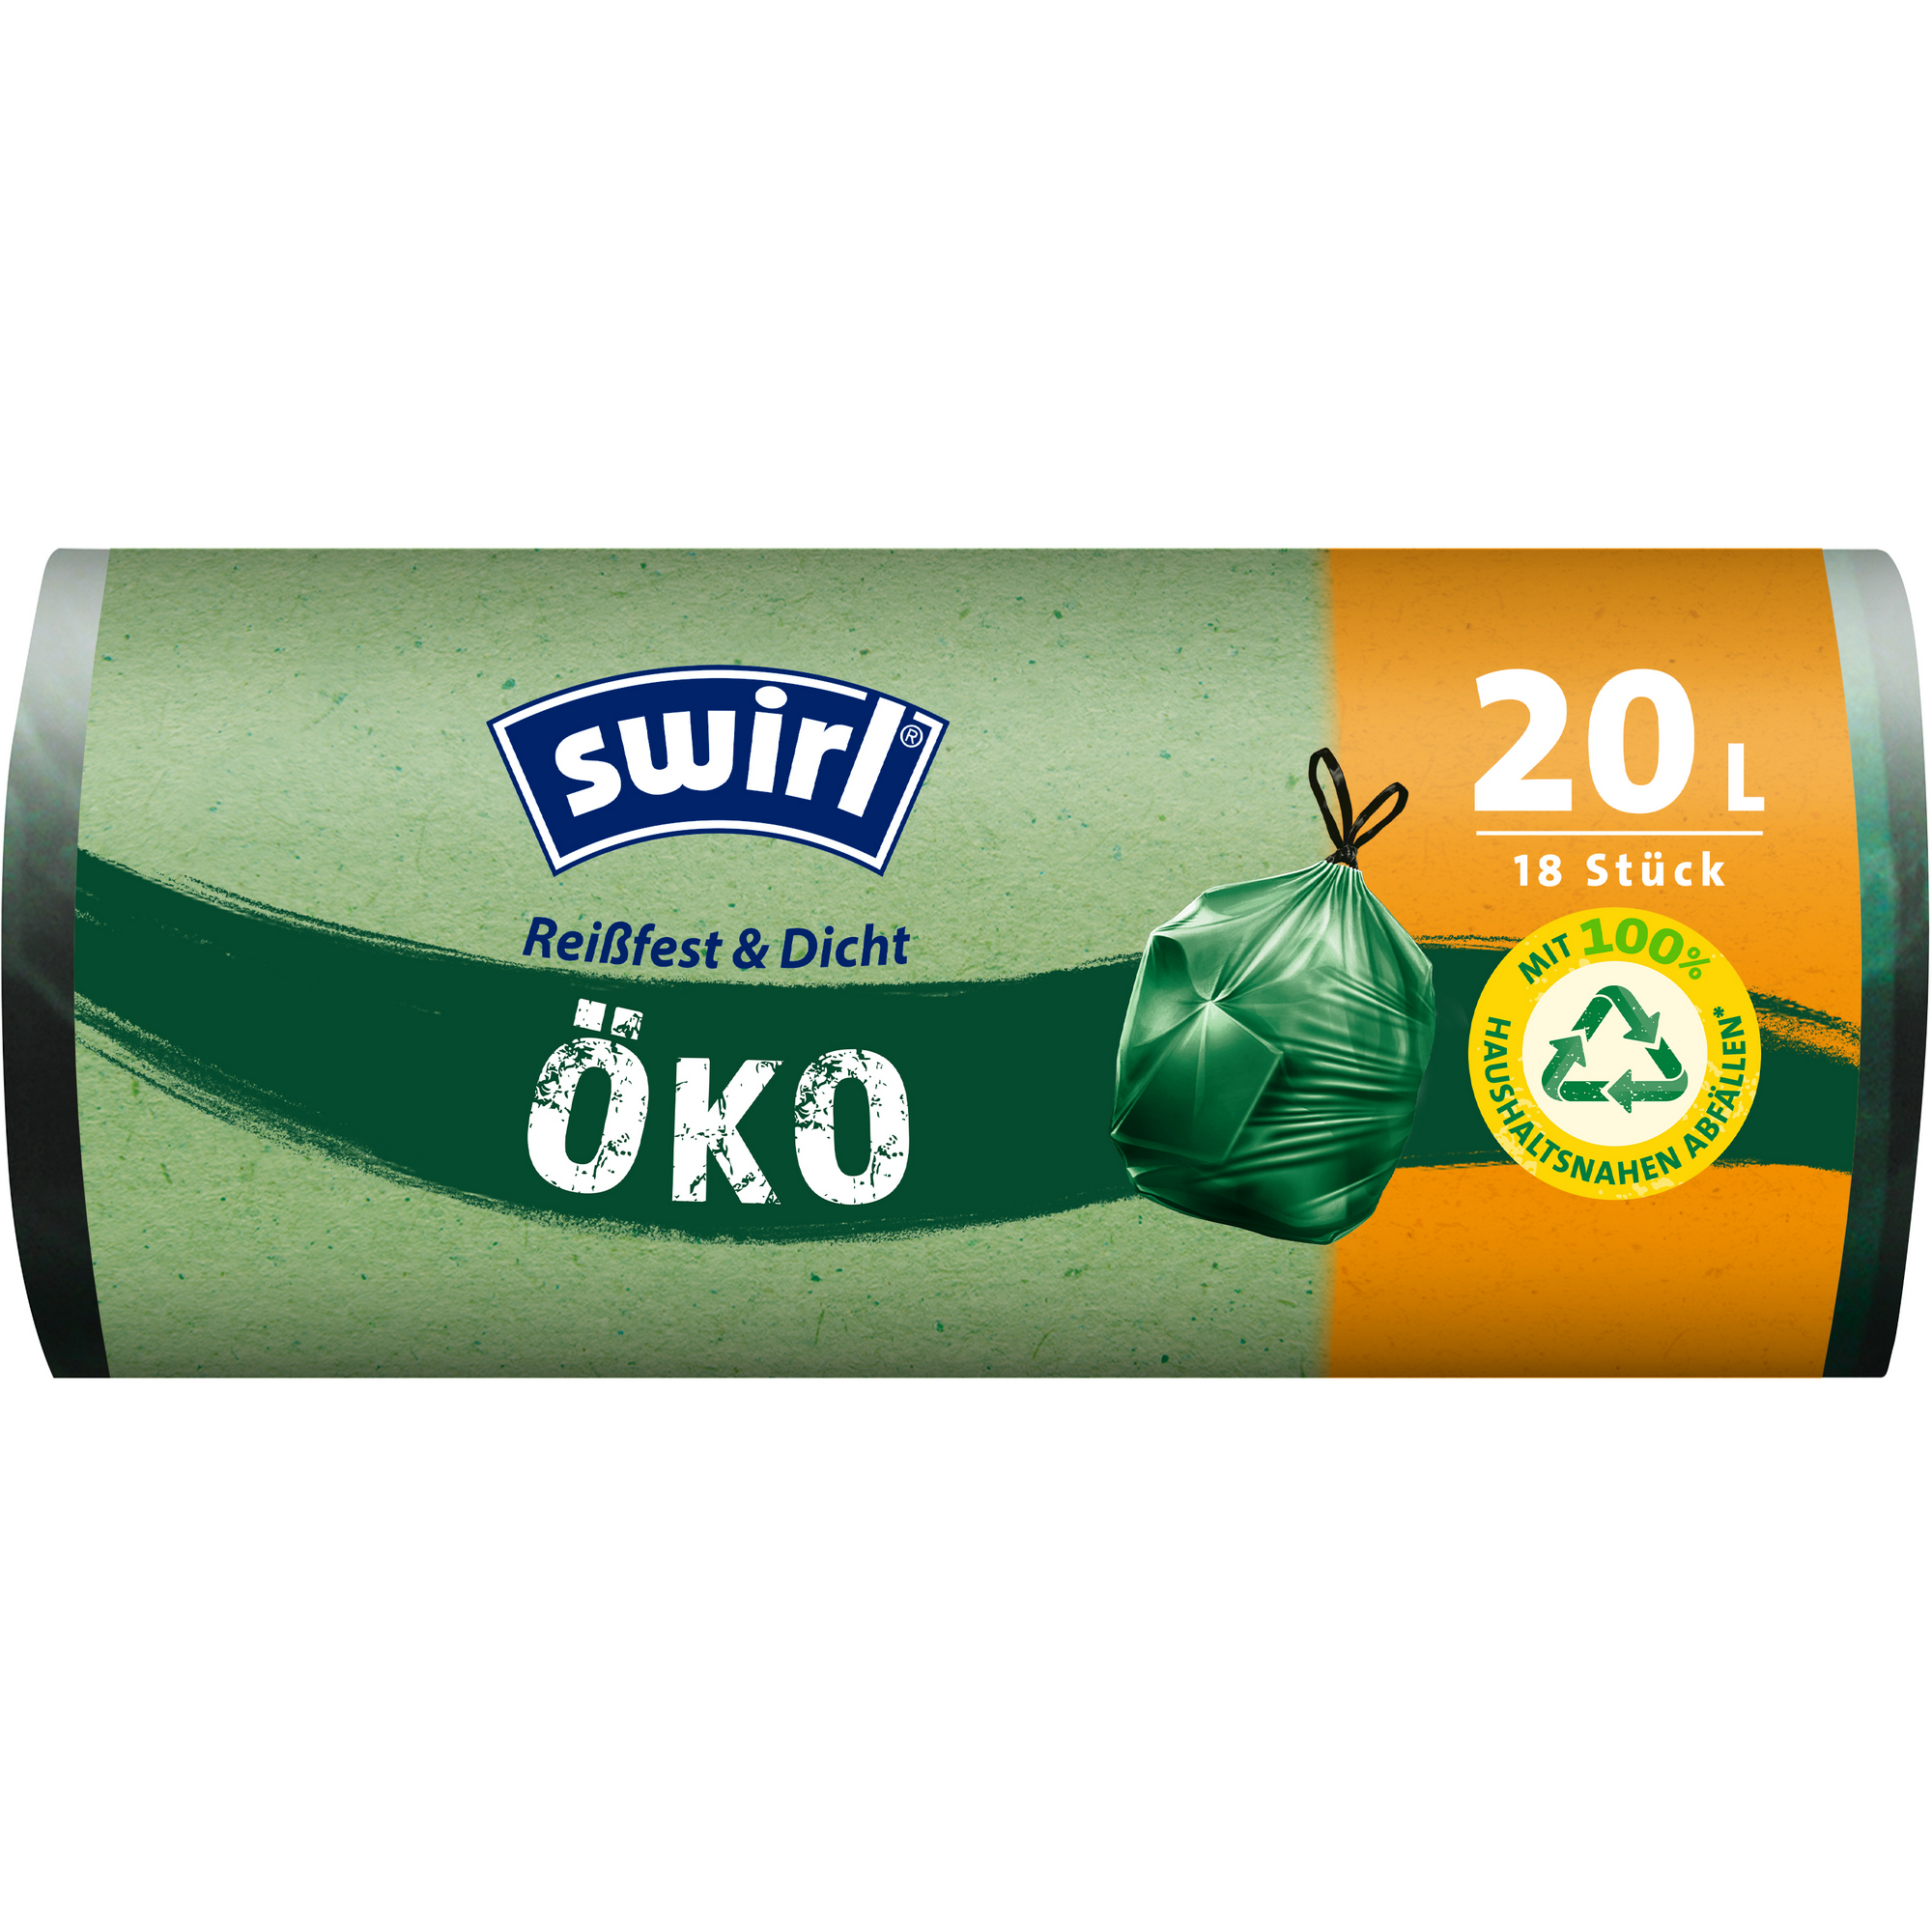 Öko-Müllbeutel 'Reißfest & Dicht' mit Zugband 20 l 18 Stück + product picture